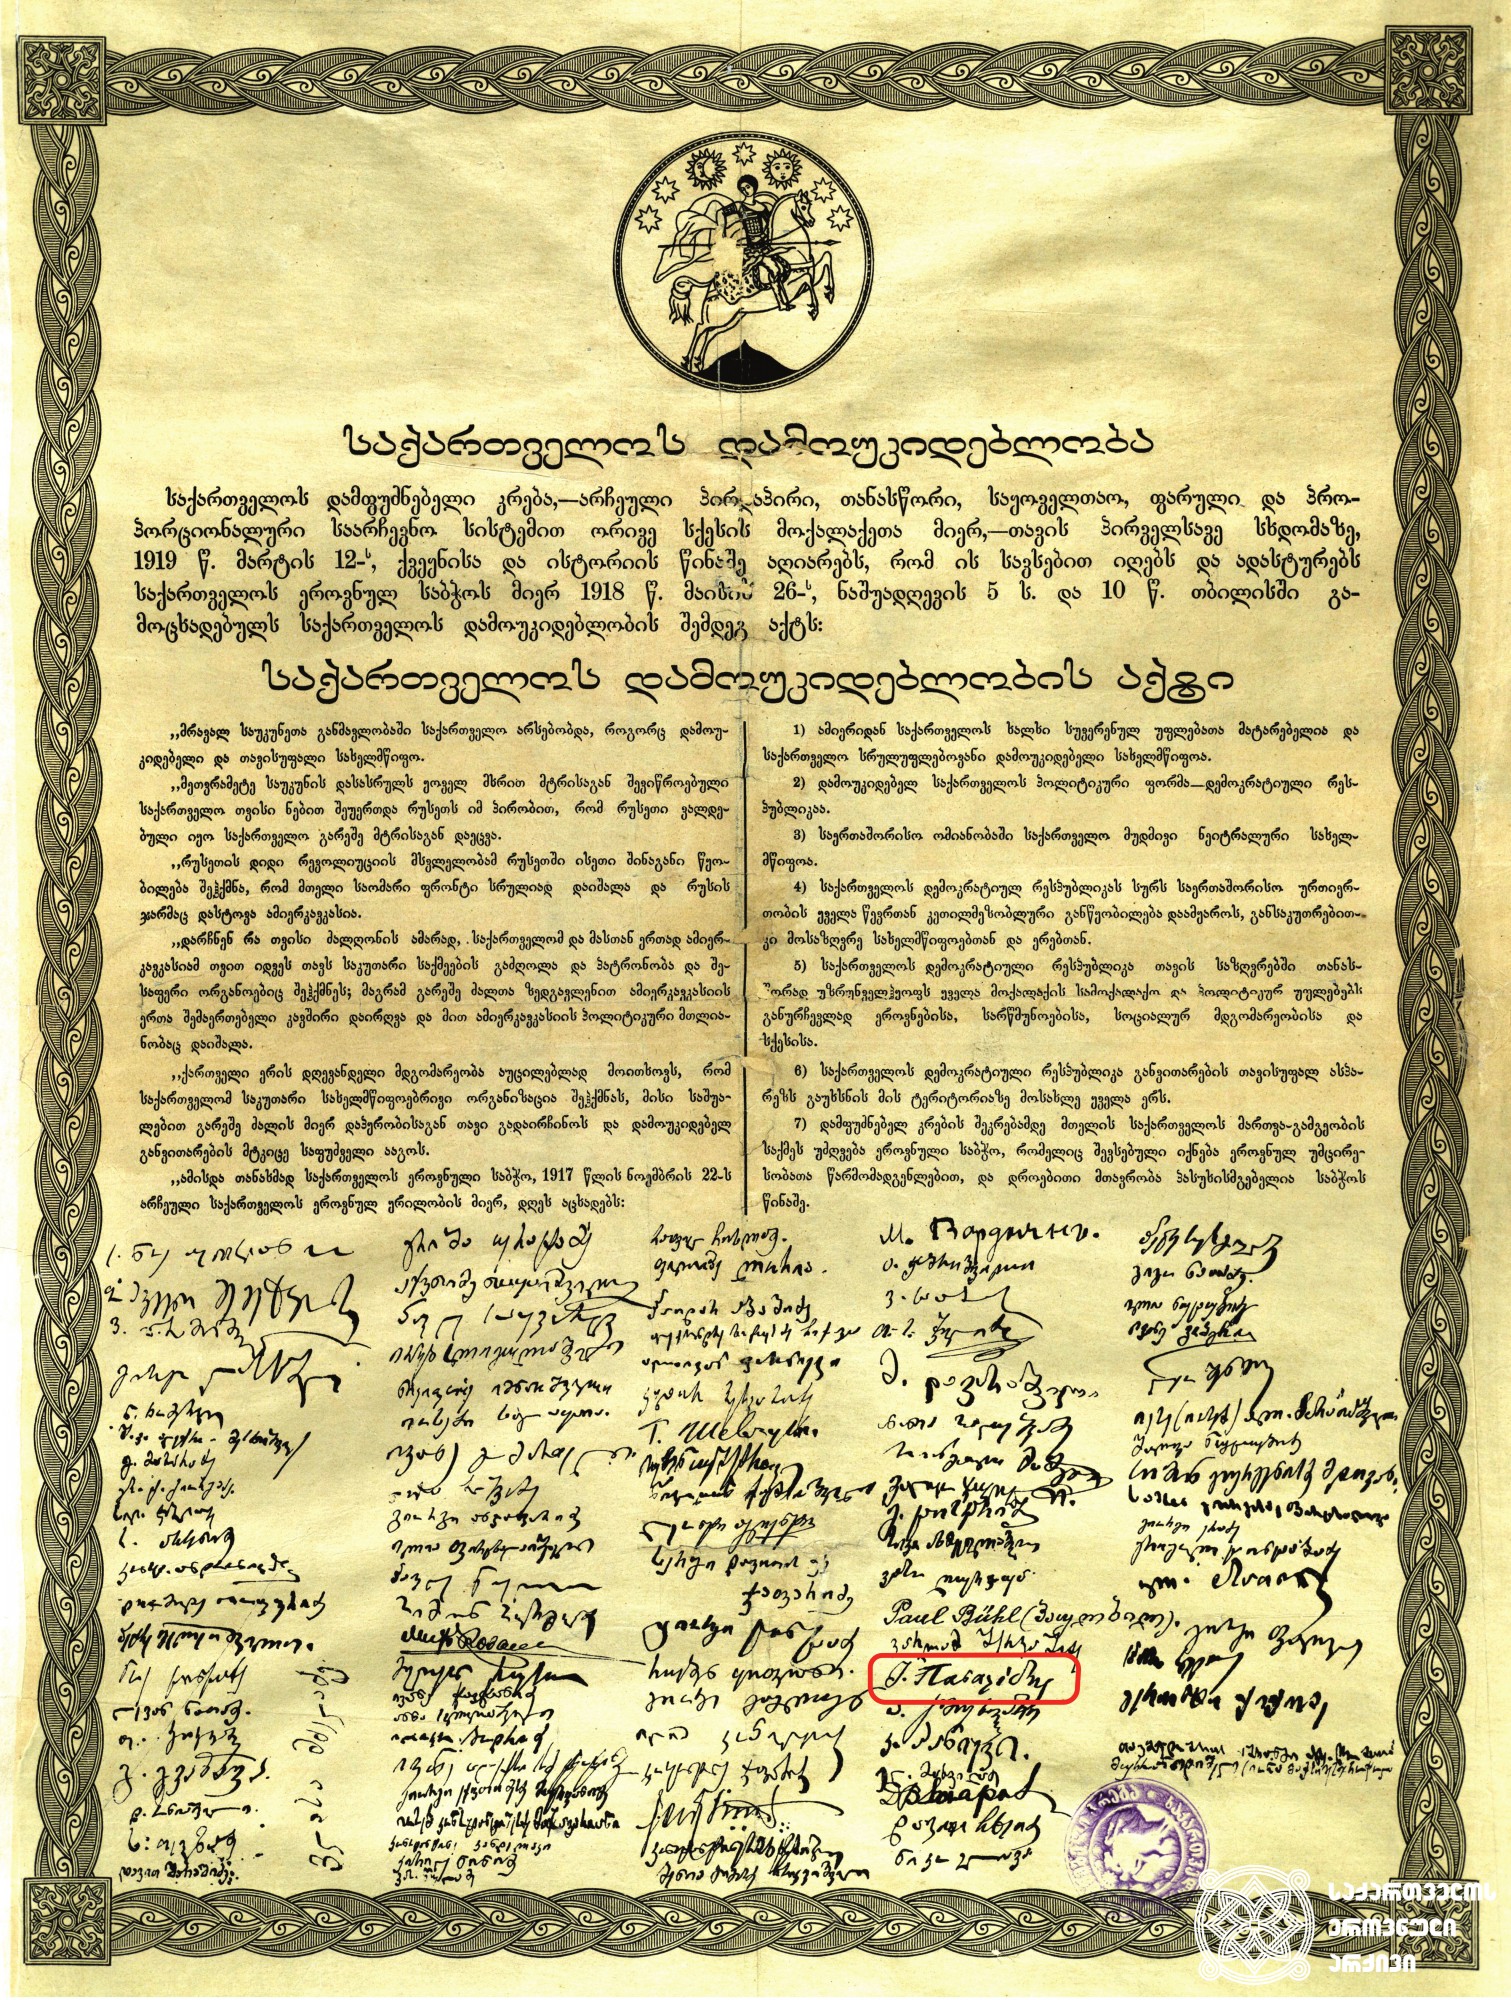 საქართველოს დამოუკიდებლობის აქტი, მიღებული 1918 წლის 26 მაისს საქართველოს ეროვნული საბჭოს სხდომაზე და დადასტურებული საქართველოს დამფუძნებელი კრების მიერ 1919 წლის 12 მარტს. <br>
1919 წლის 12 მარტი, თბილისი. <br>
შენიშვნა: აქტზე სოციალ-დემოკრატიული პარტიის წევრ იოანის ფაშალიდის ხელმოწერაა ბერძნულად. <br>

The Act of Independence of Georgia, adopted on May 26, 1918 at the sitting of the National Council of Georgia and ratified by the Constituent Assembly of Georgia on March 12, 1919. <br>
March 12, 1919, Tbilisi. <br>
Note: The act is signed in Greek by Ioannis Passalidis, member of the Social Democratic Party.